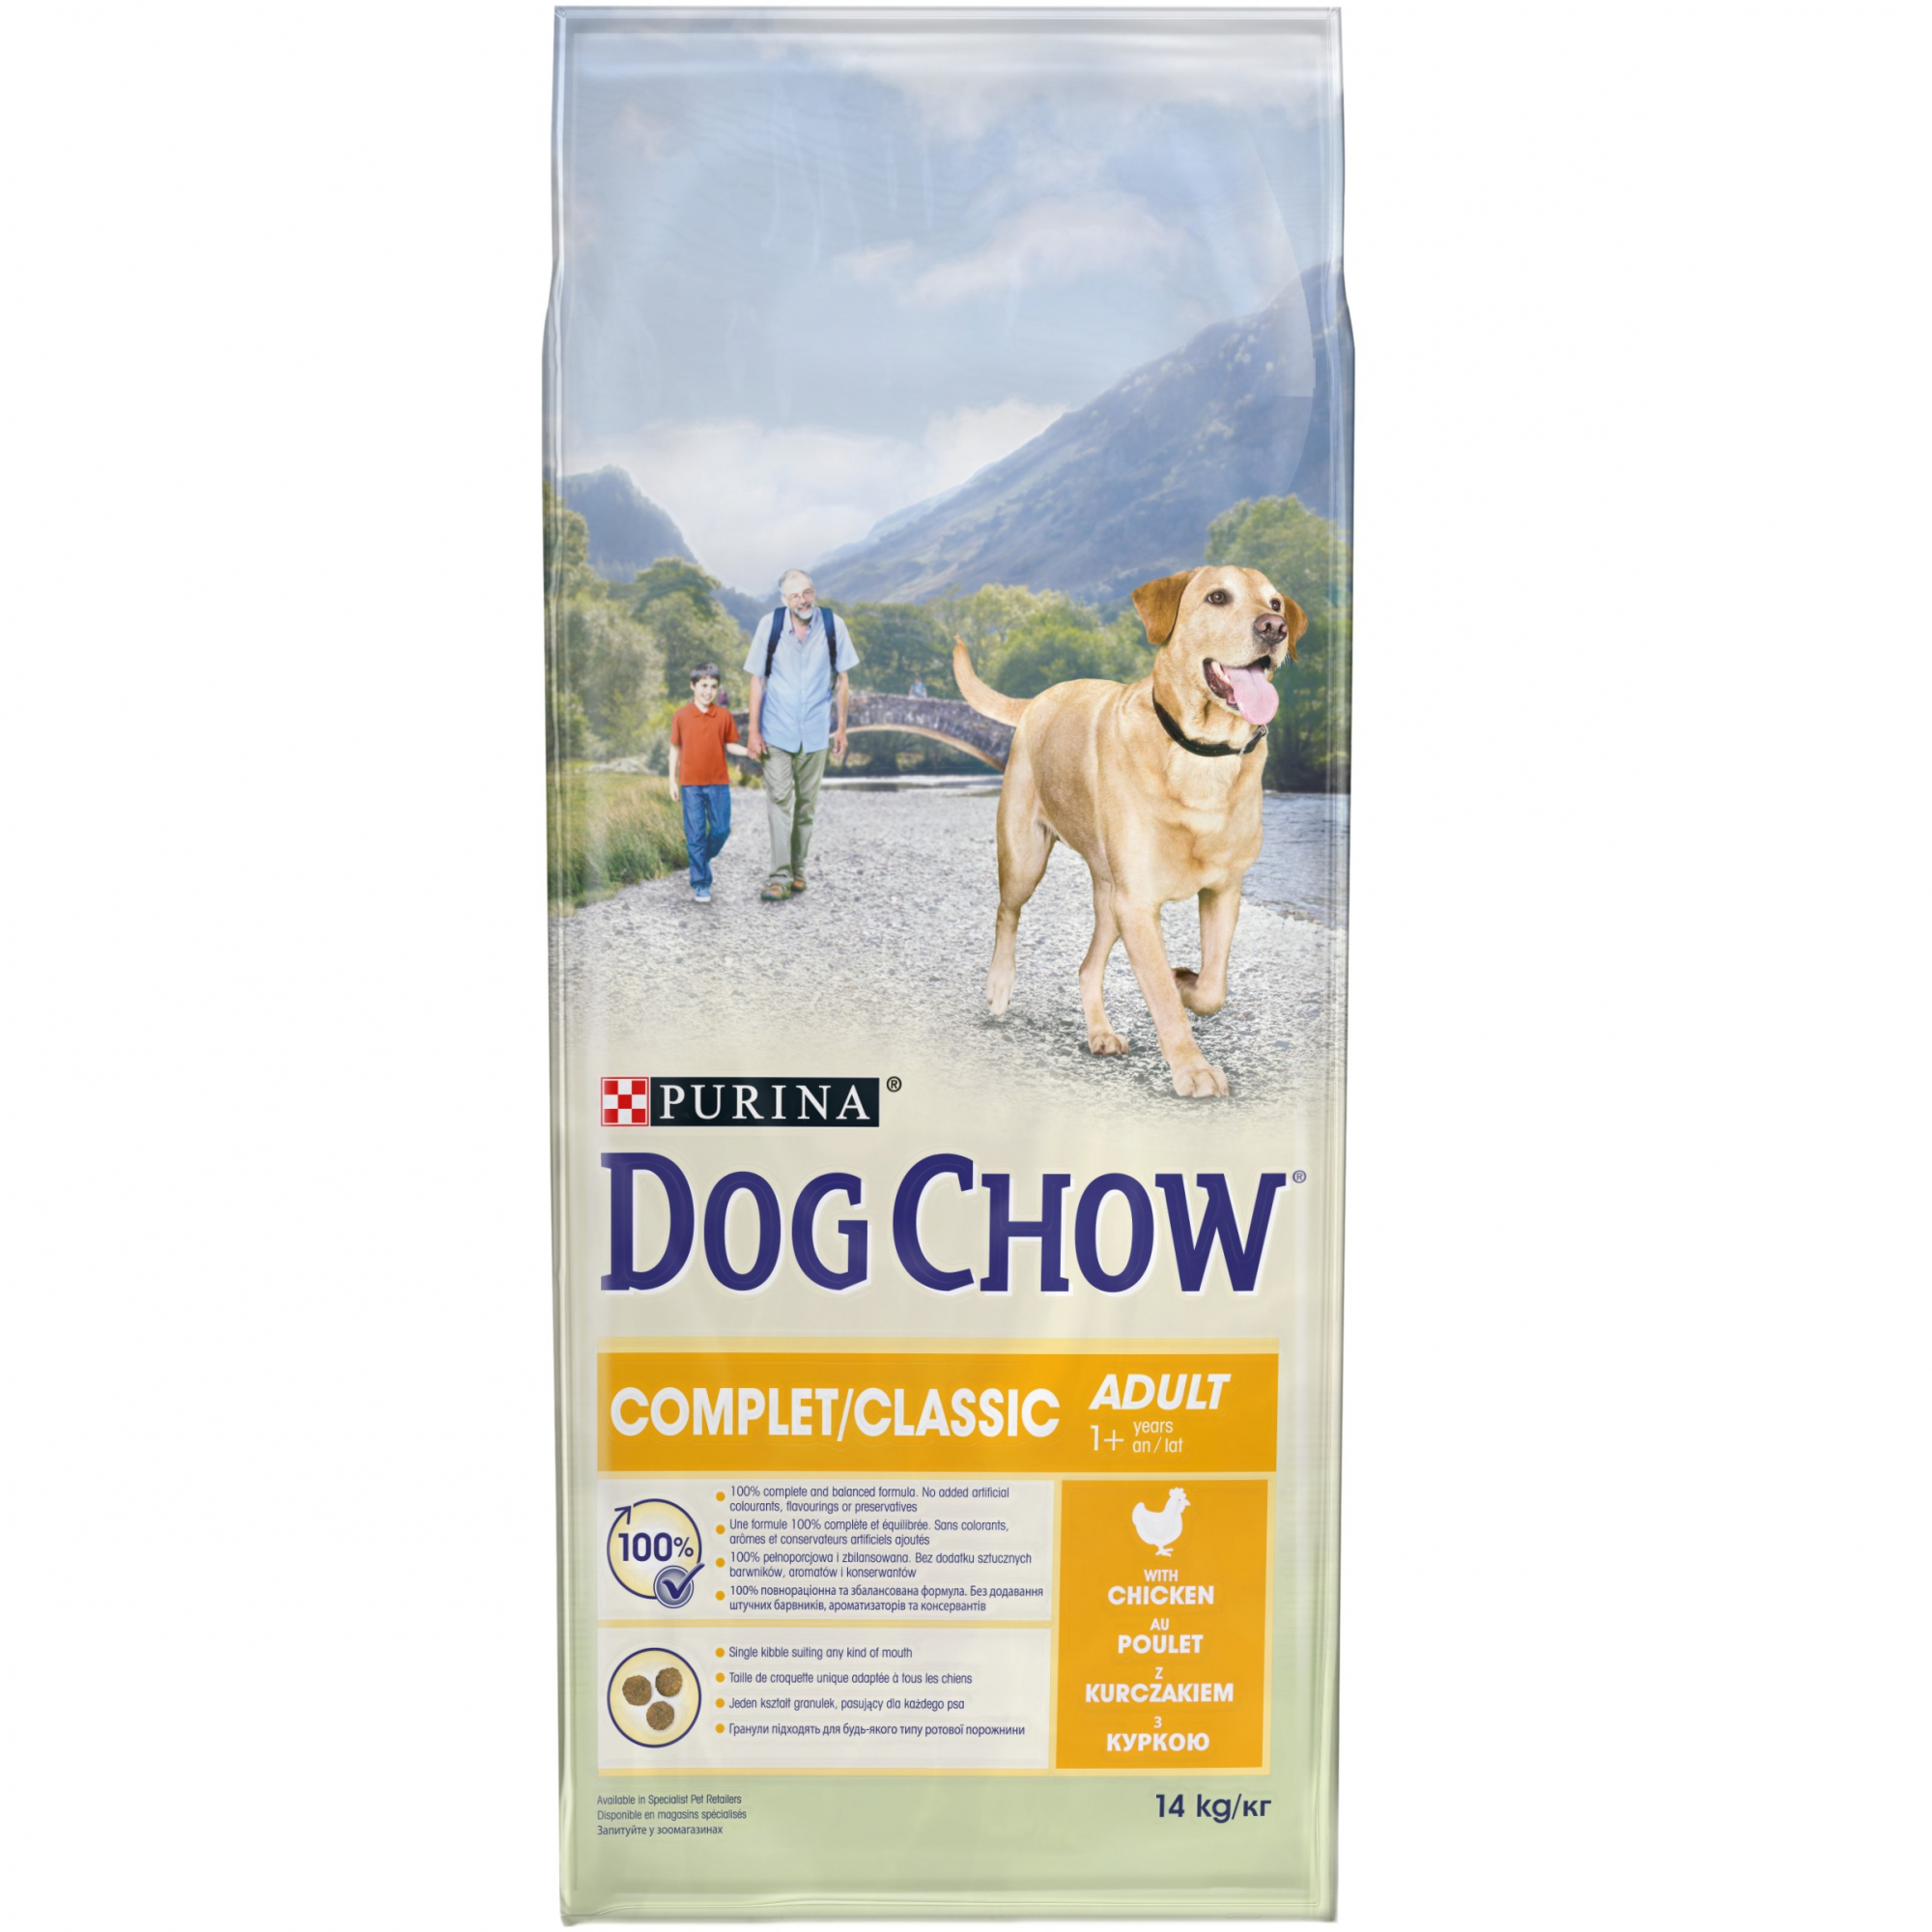 DOG CHOW Complet avec du poulet pour chien